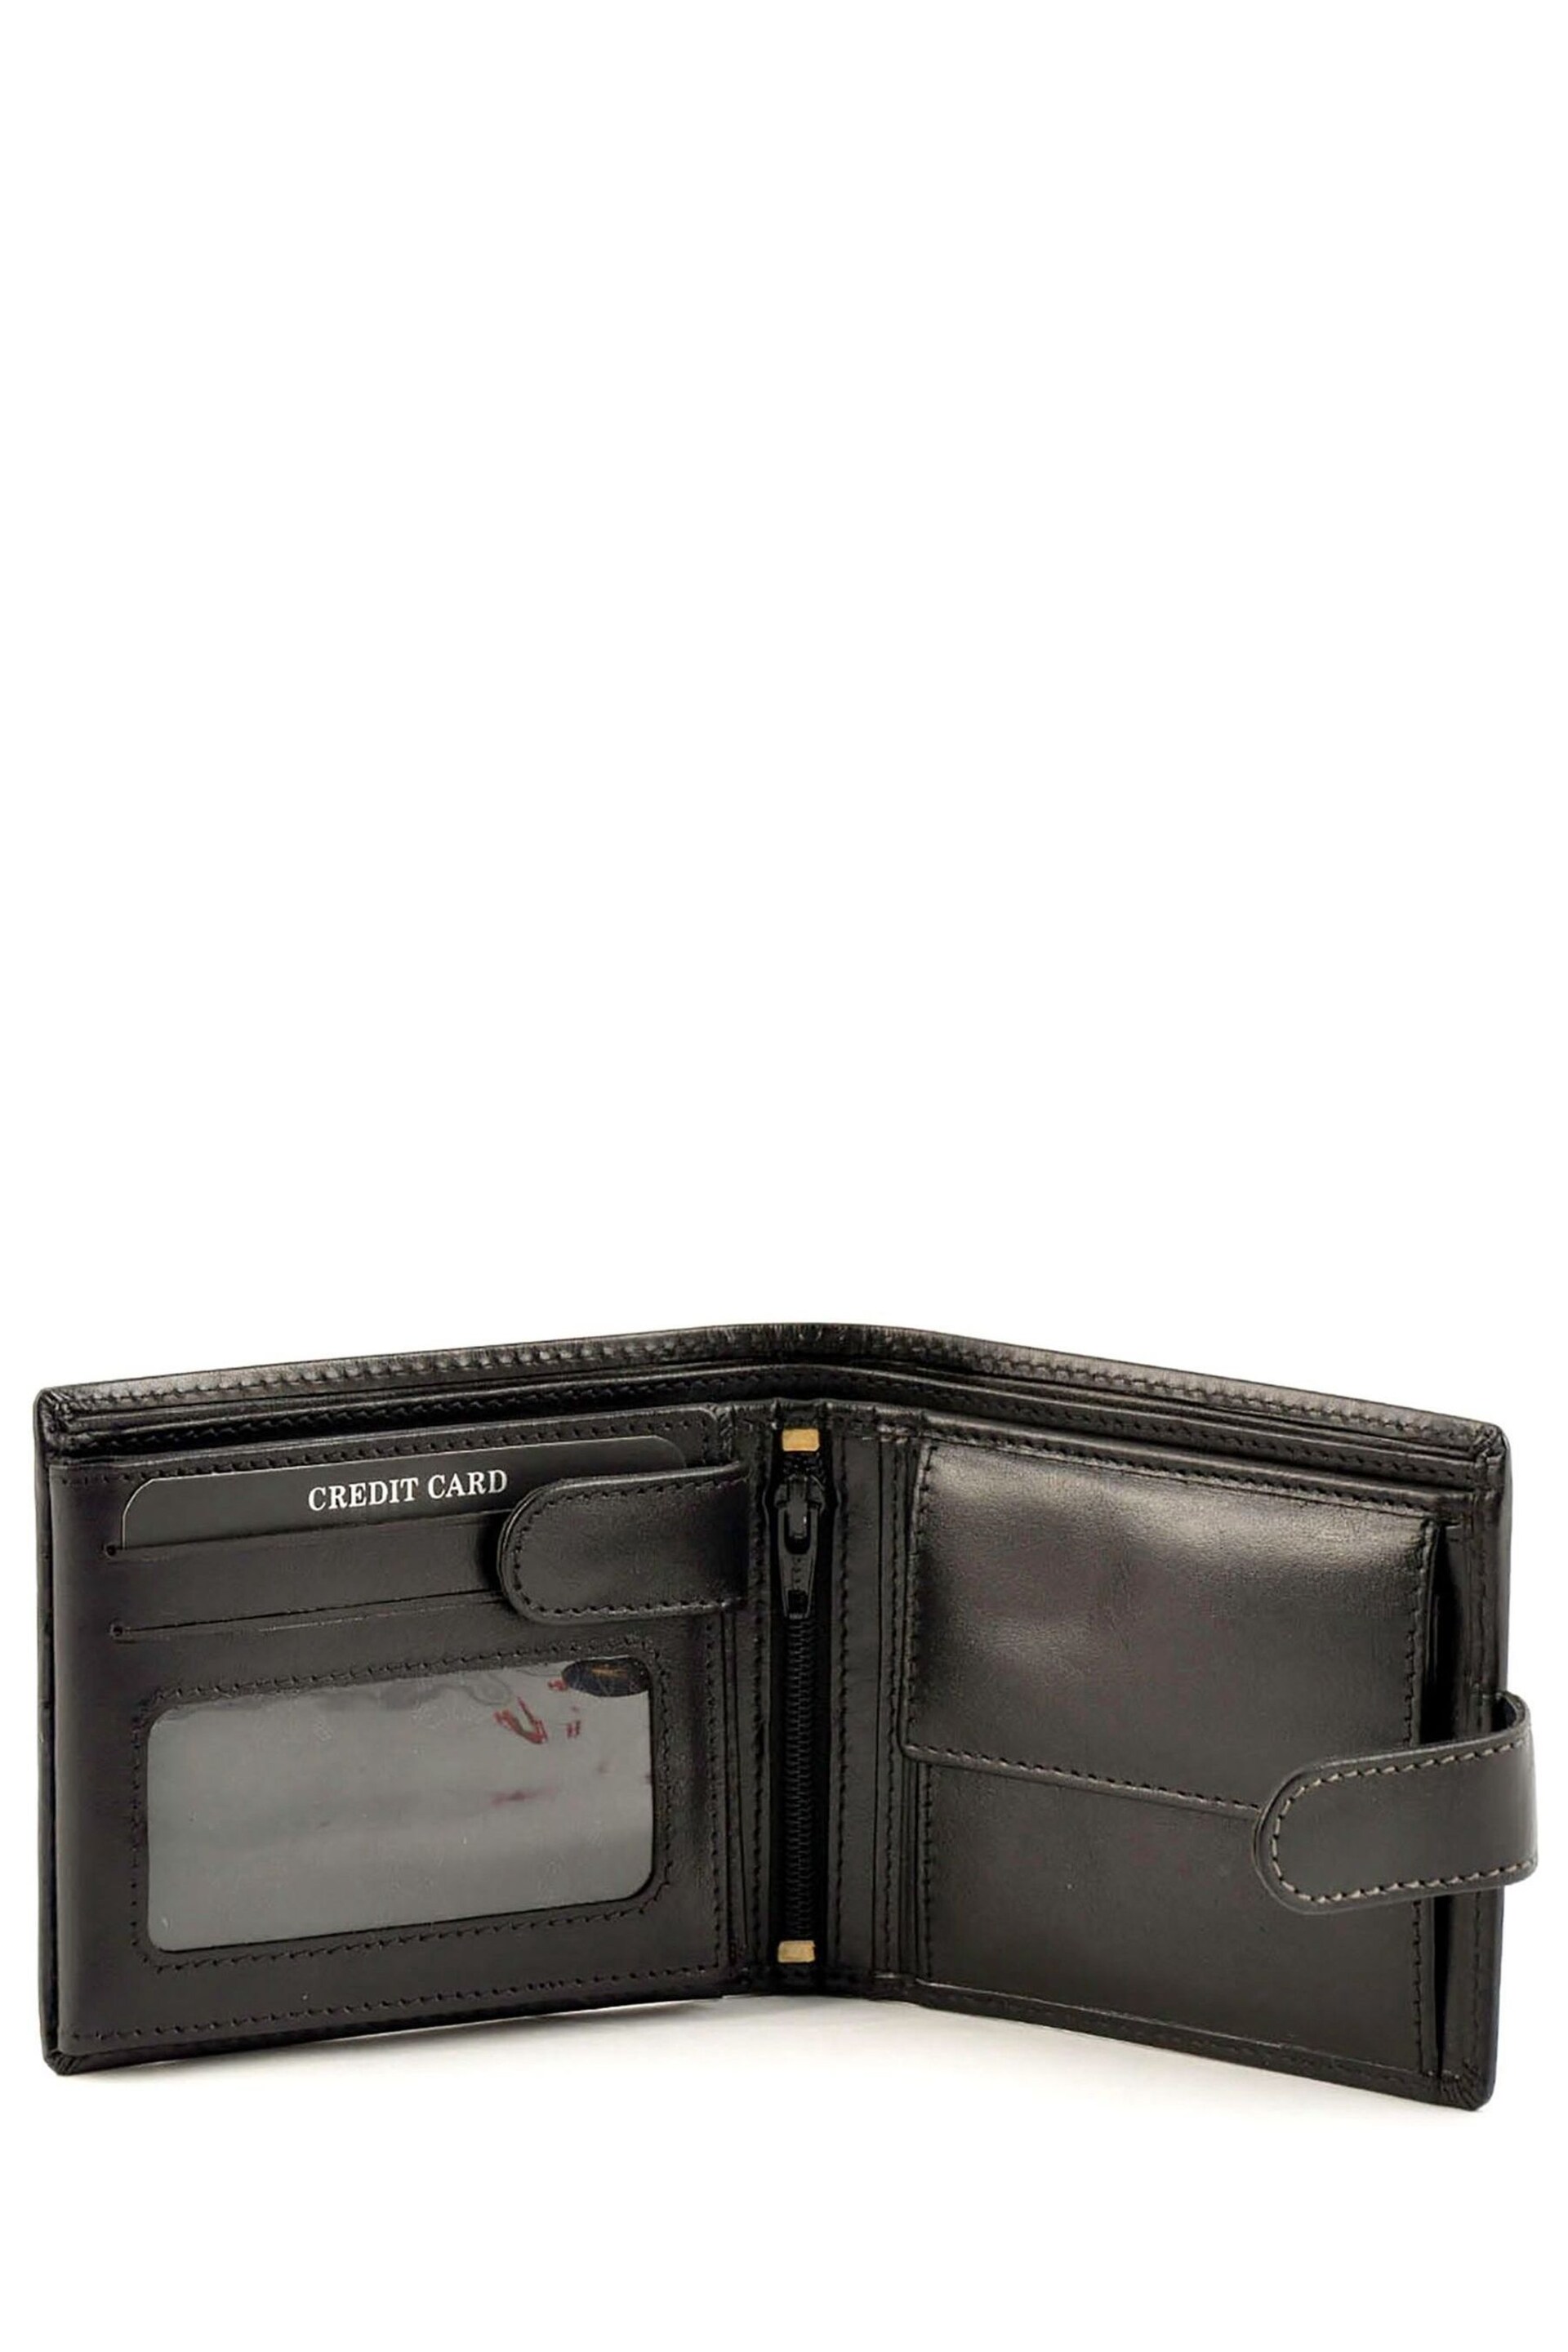 Lakeland Leather Ascari Leather Tri-Fold Wallet - Image 4 of 5